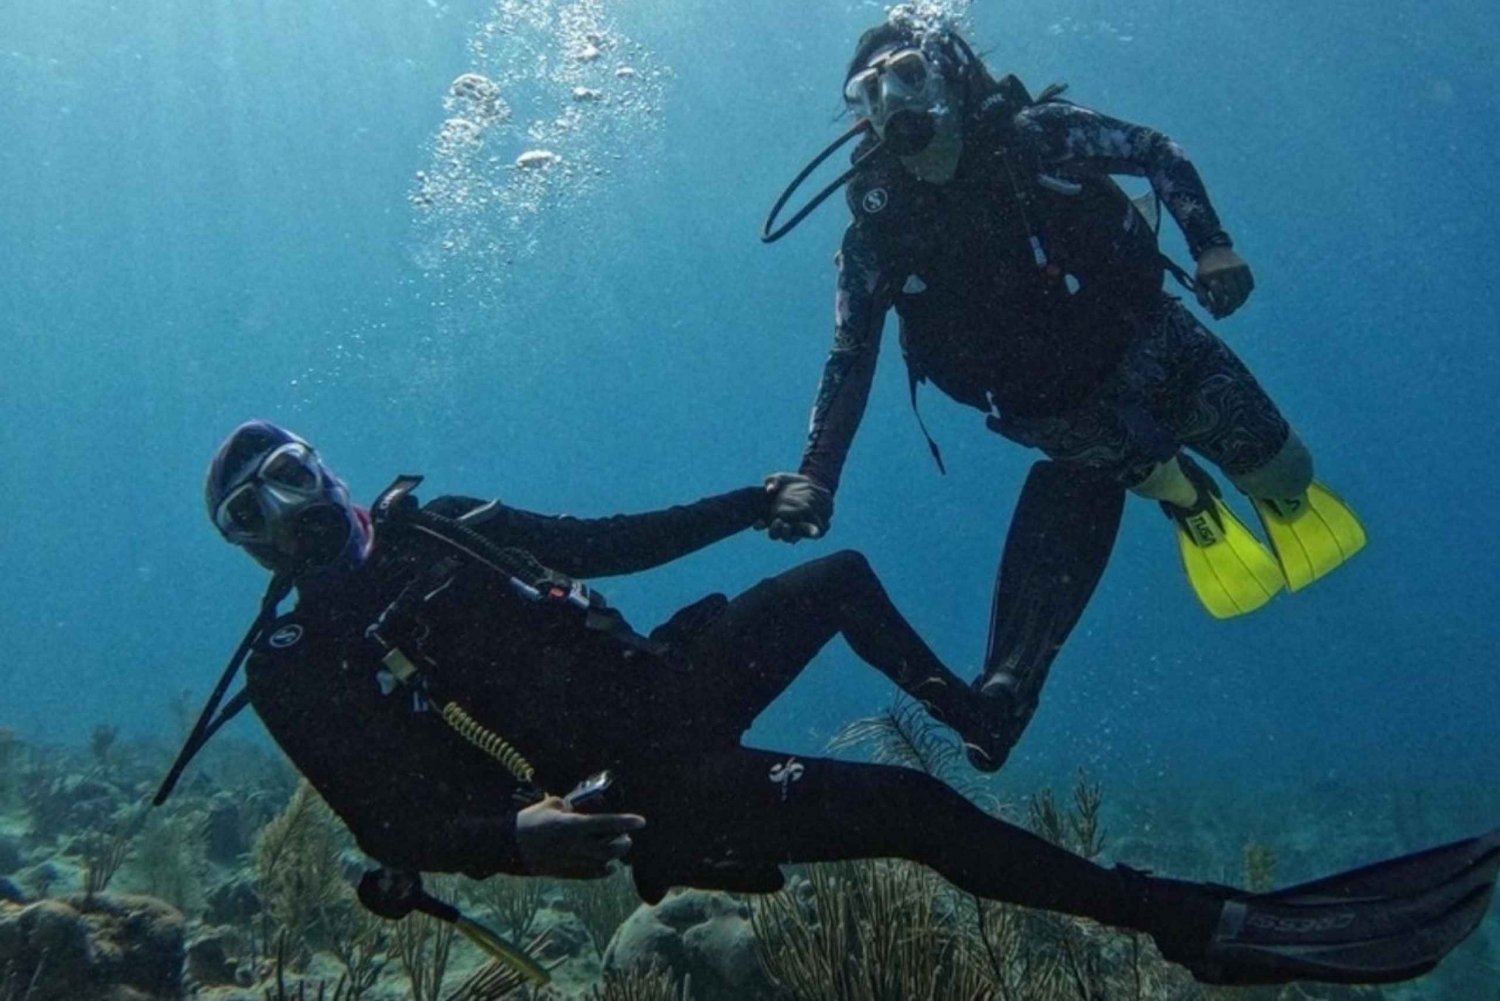 San Andrés Island: Personalized Mini Scuba Diving Course